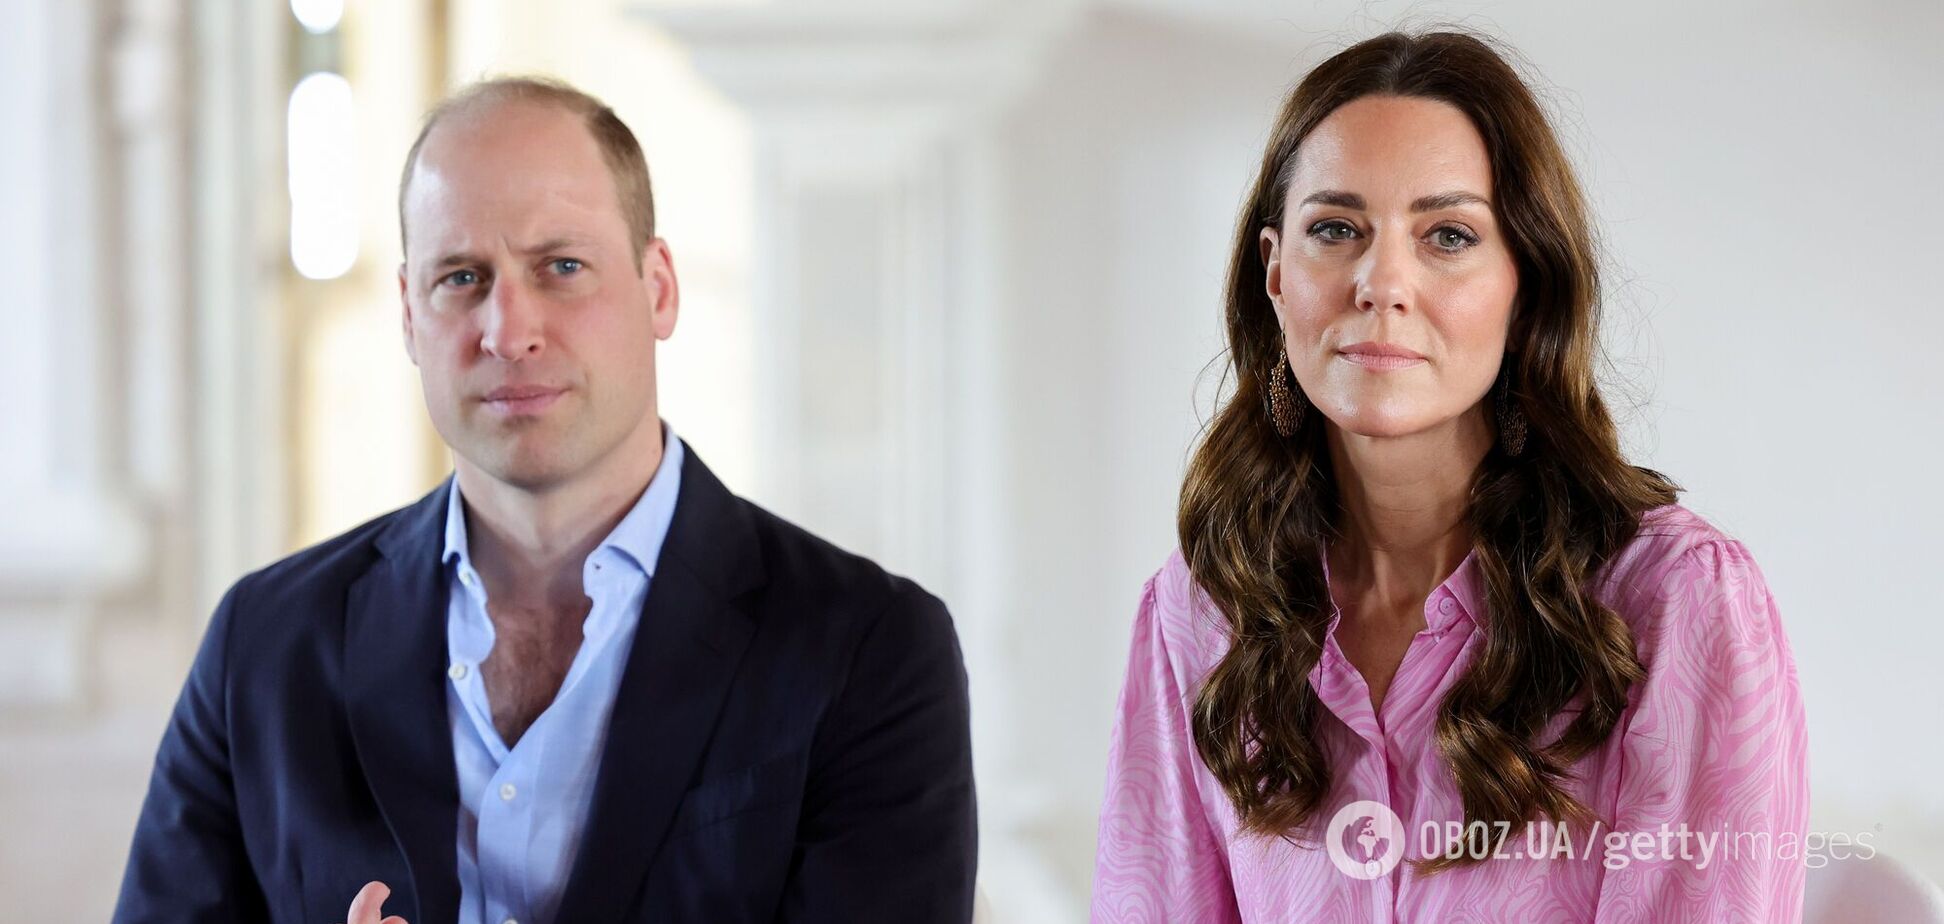 Принц Уильям в последнюю минуту отказался от участия в важном мероприятии из-за 'личного': в СМИ поползли слухи о состоянии здоровья Кейт Миддлтон